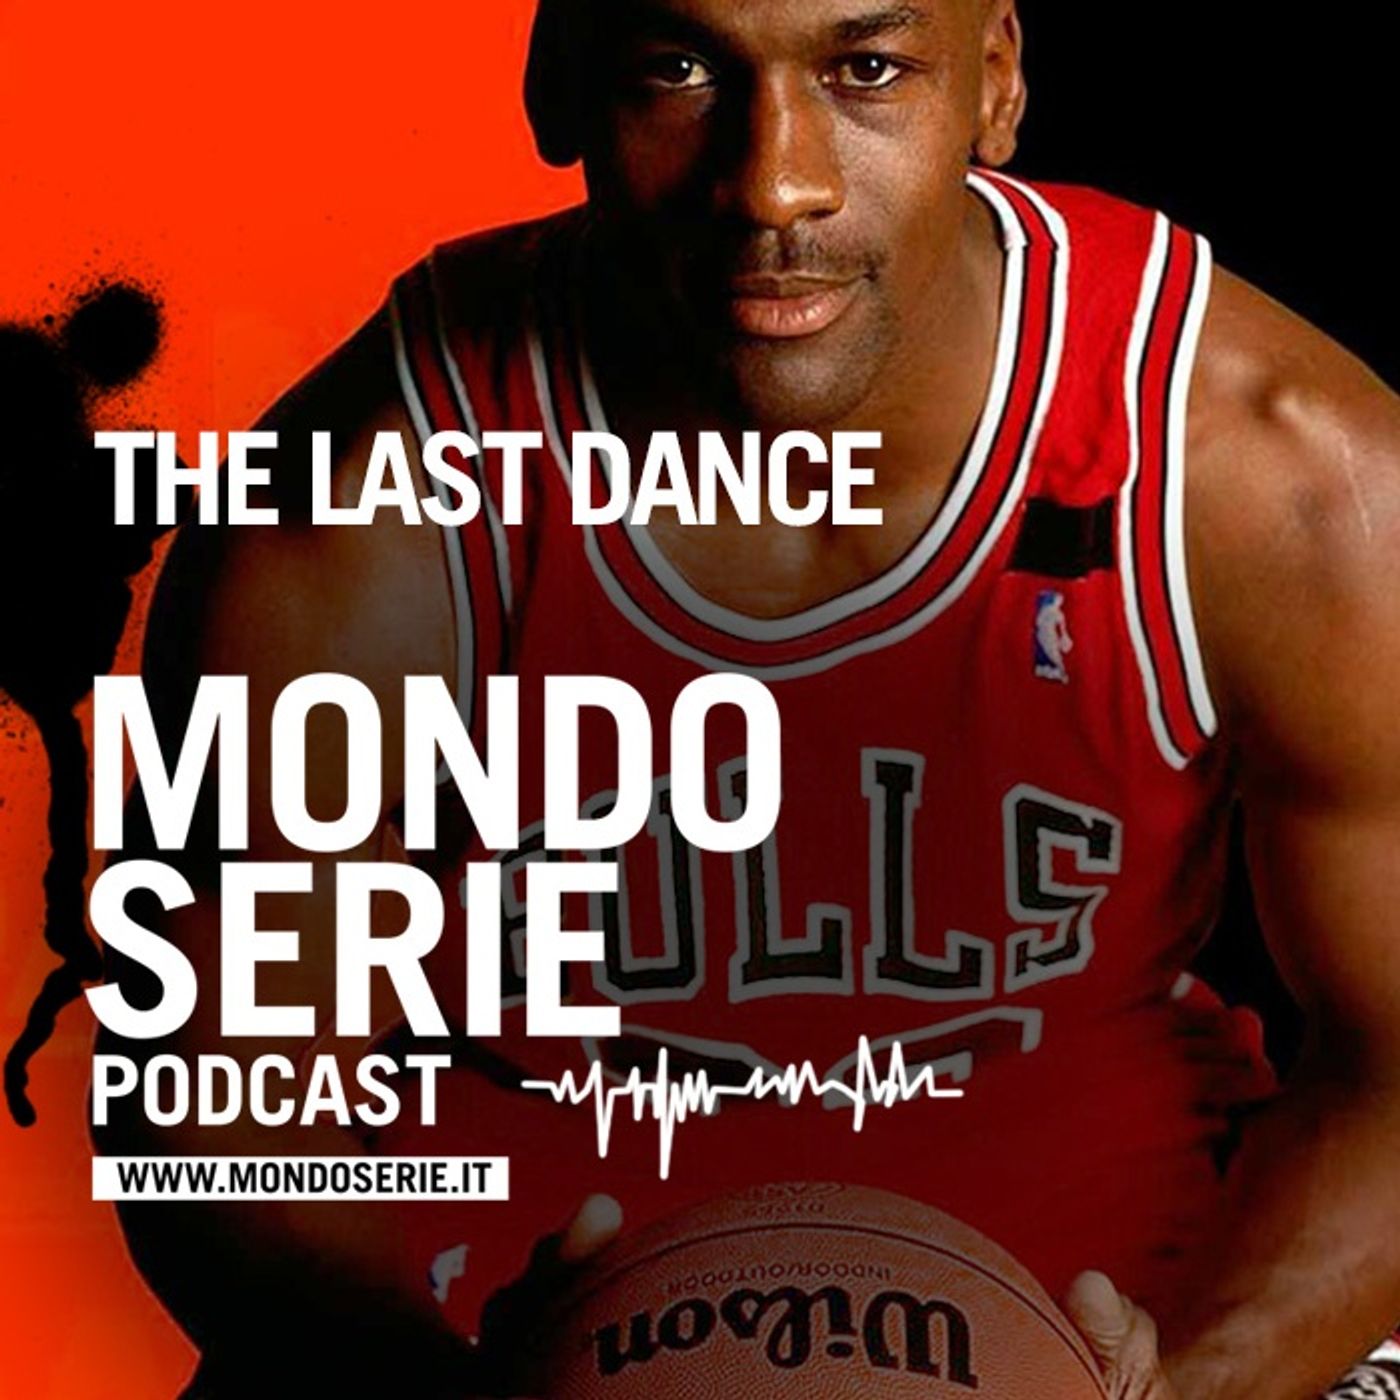 The Last Dance, la lunga ombra di Michael Jordan  | Documentari